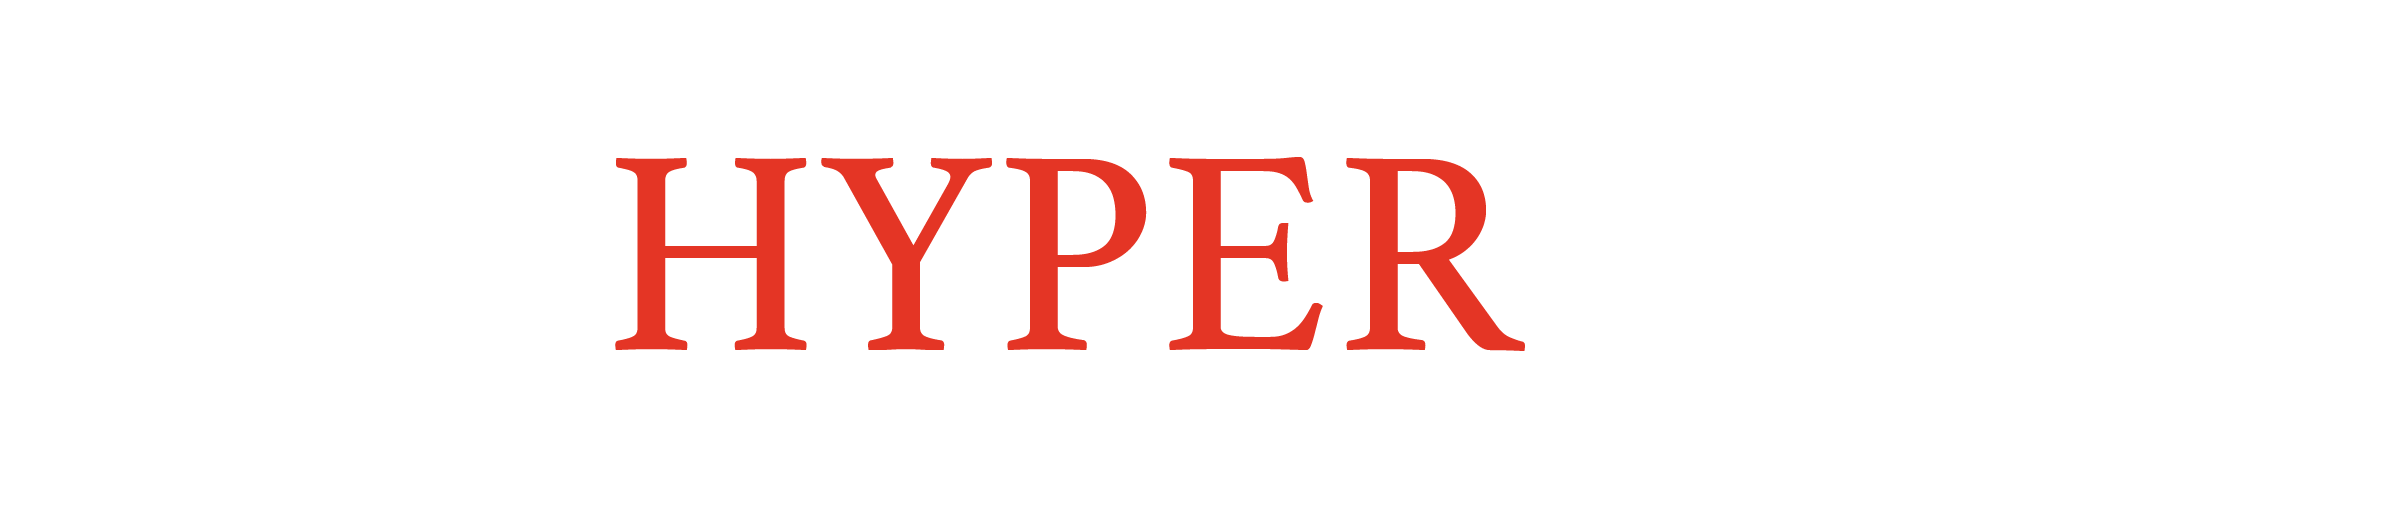 Hyperspec